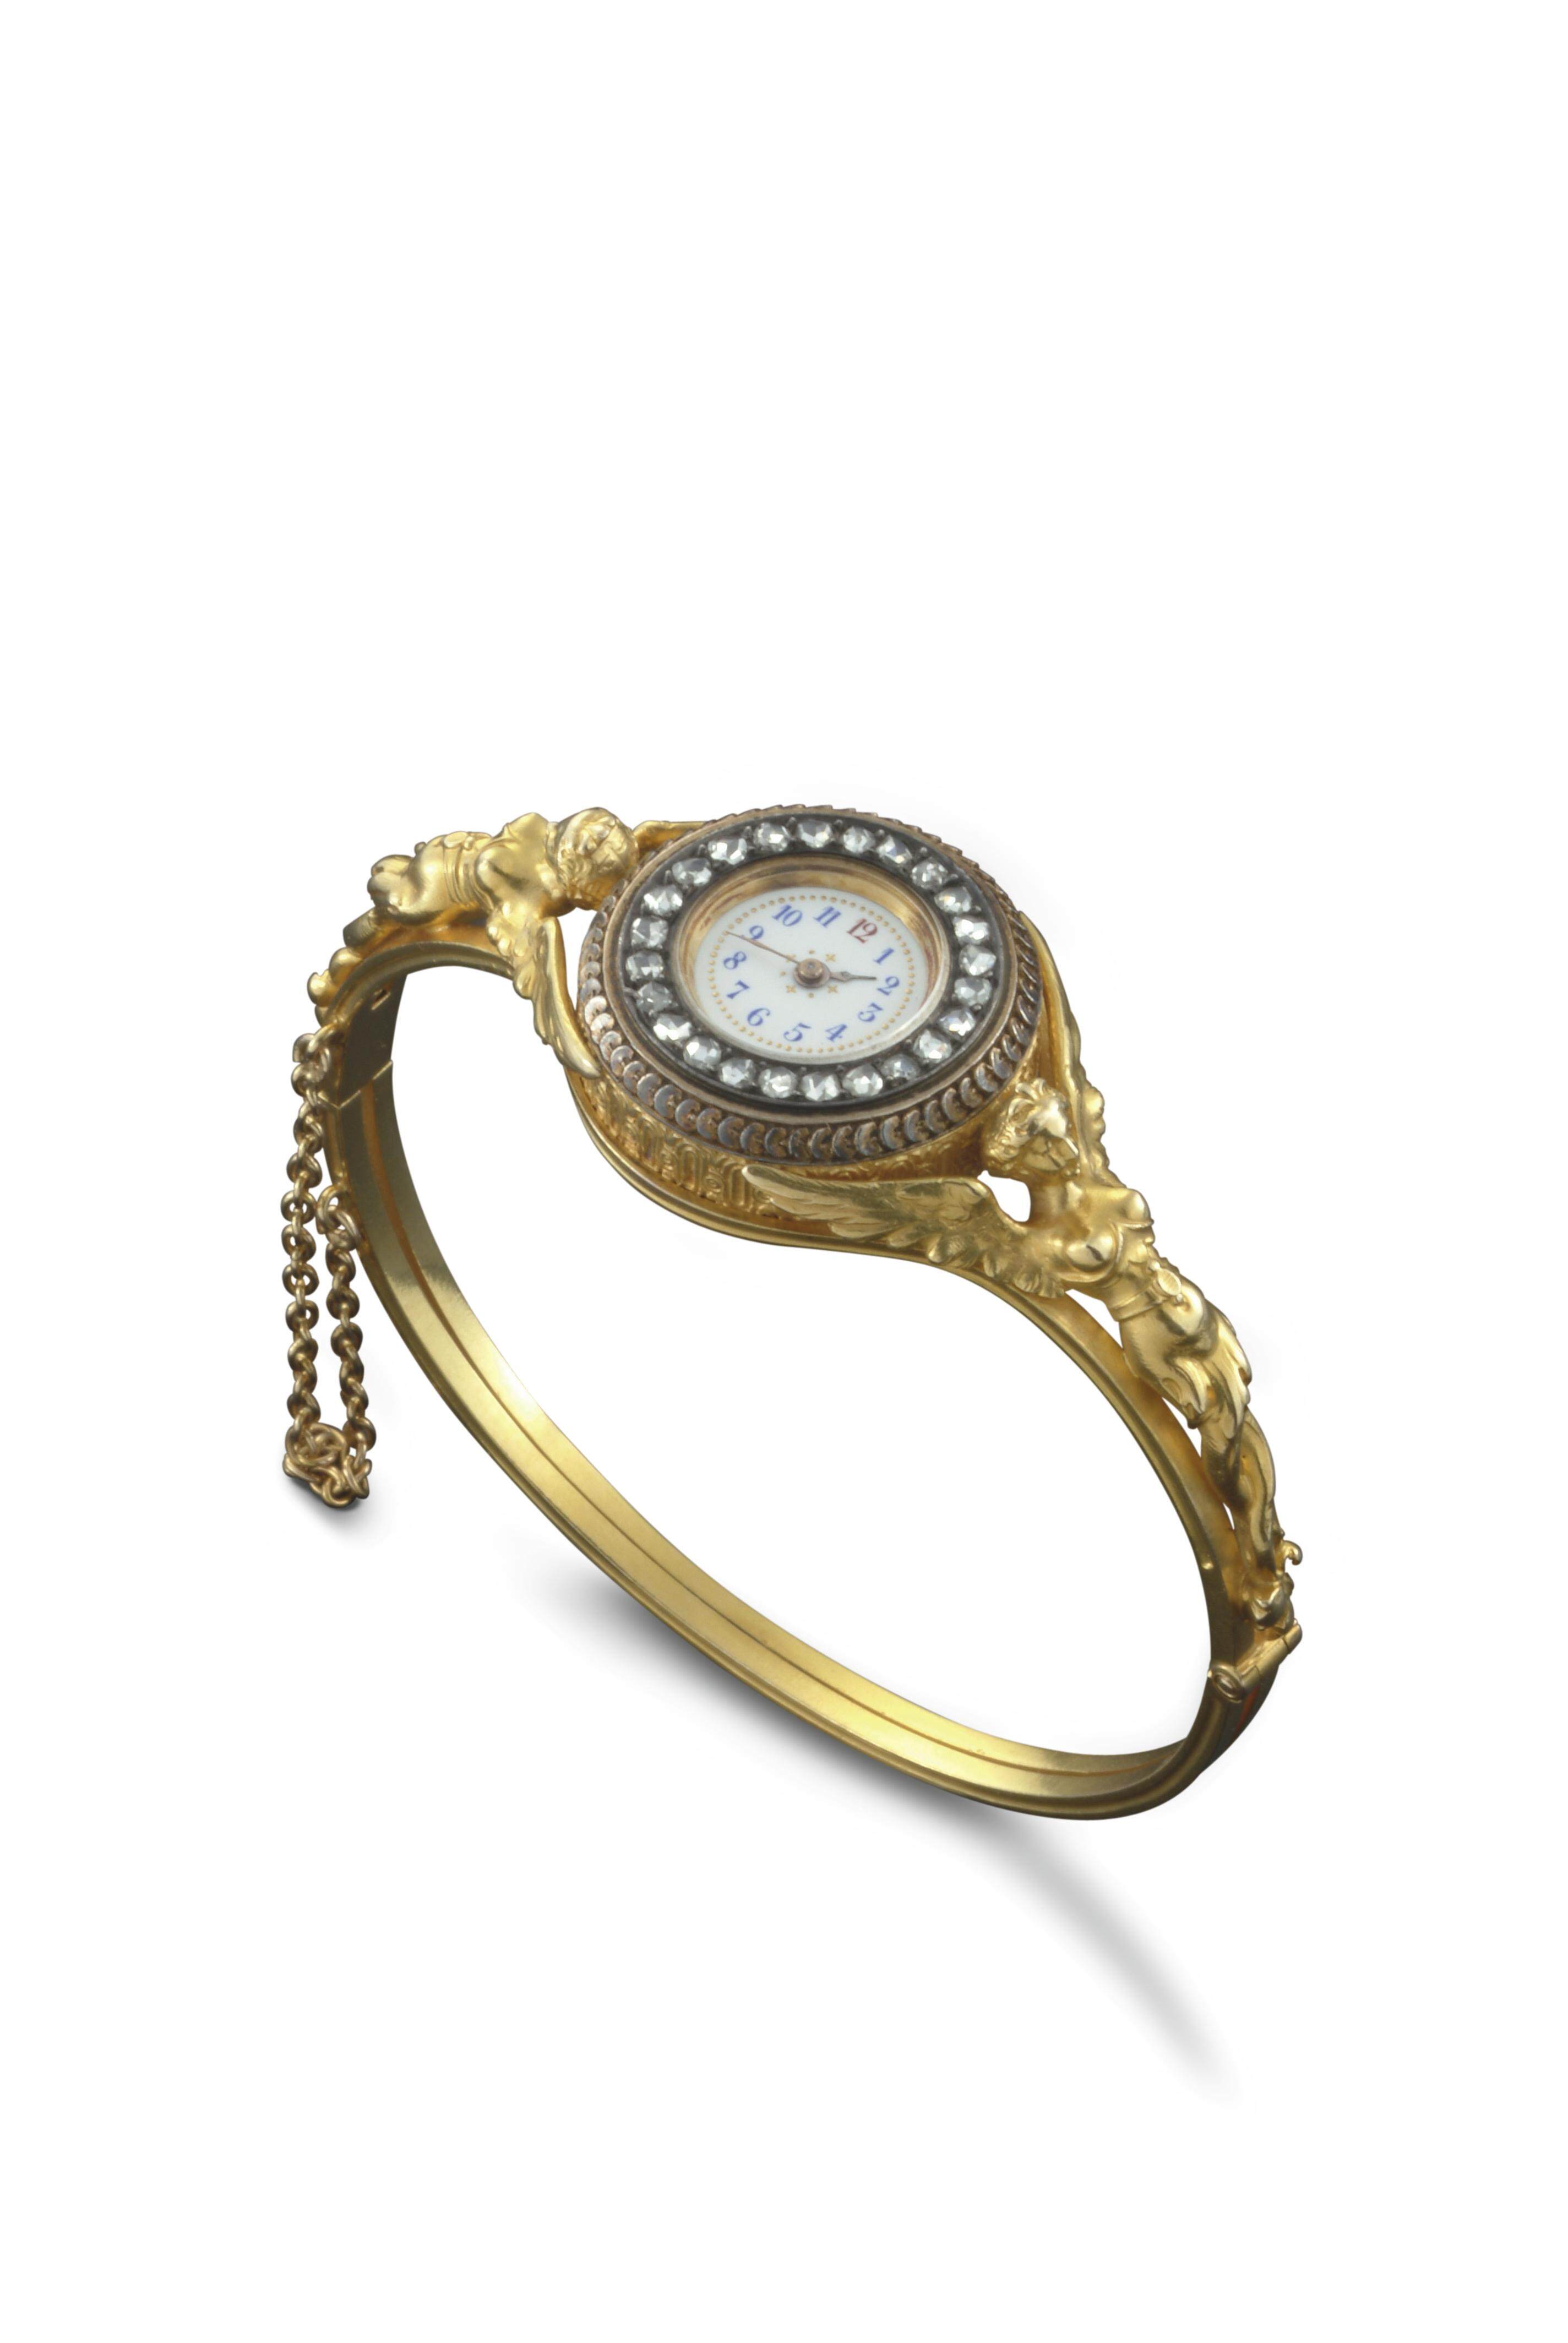 其實，女性佩戴腕錶的風氣在20世紀初還未流行，而Vacheron Constantin在1889年已推出其